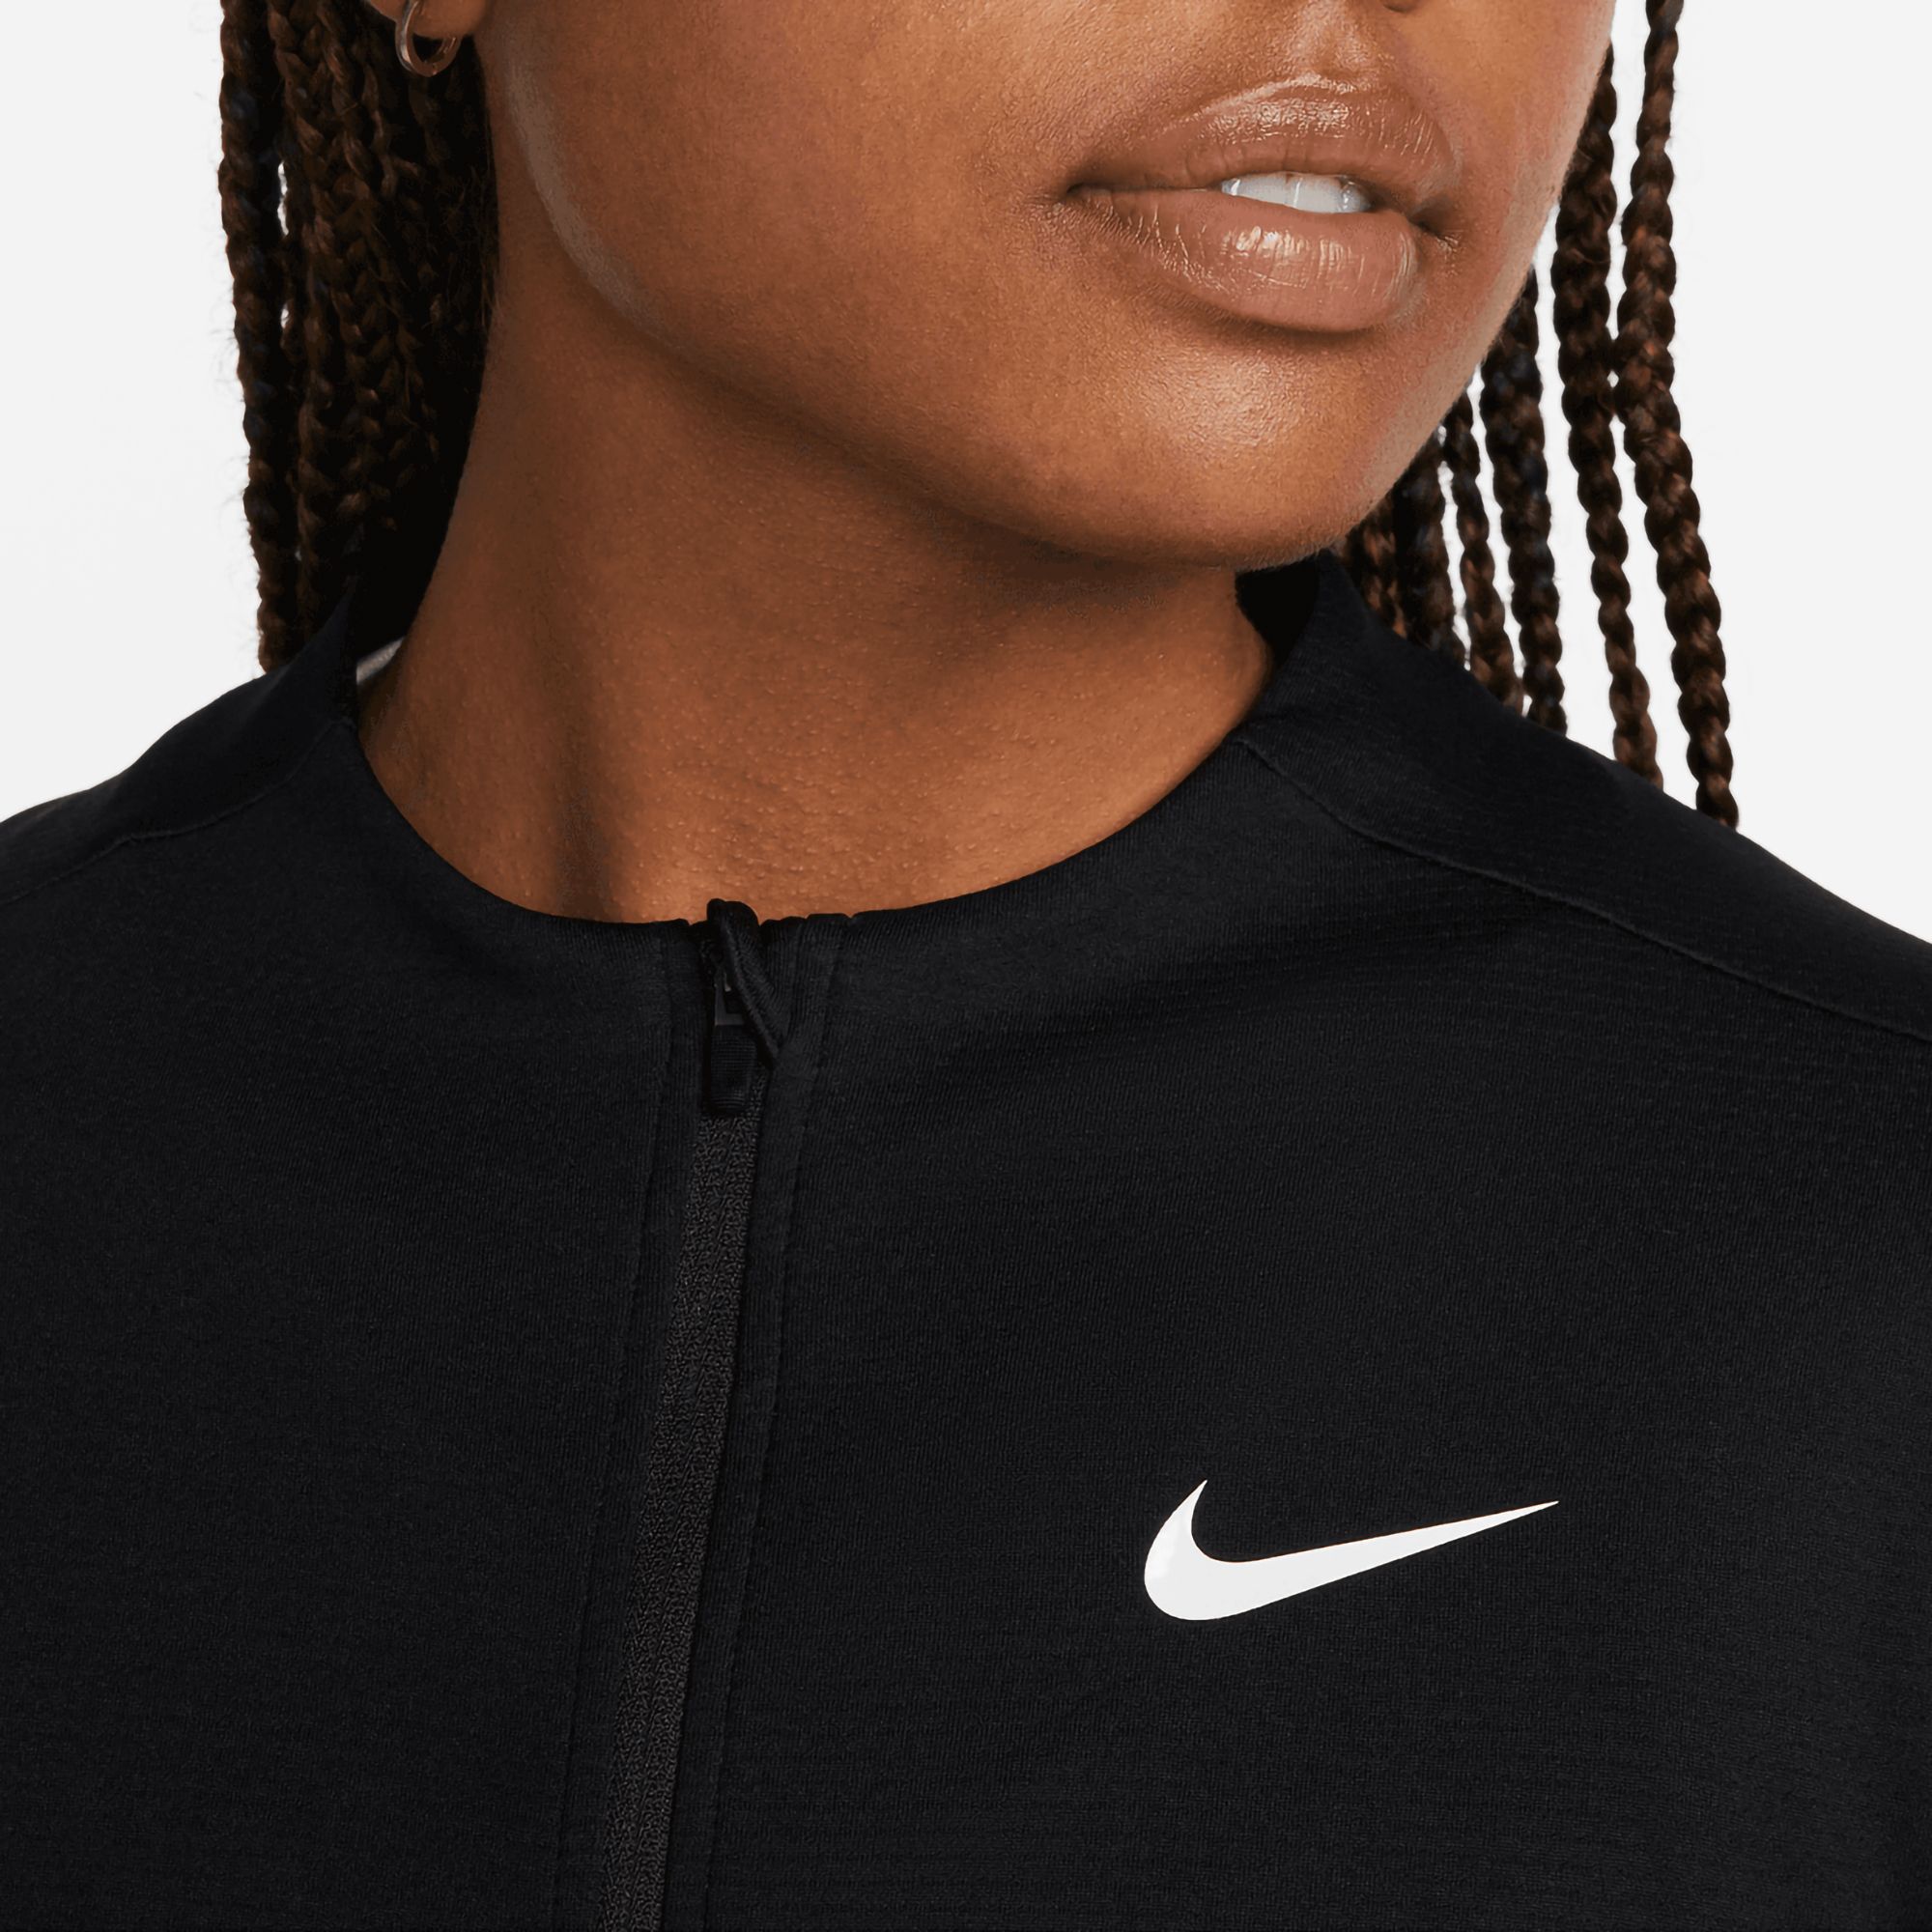 Nike Women's Dri FIT UV Advantage Full Zip Golf Top